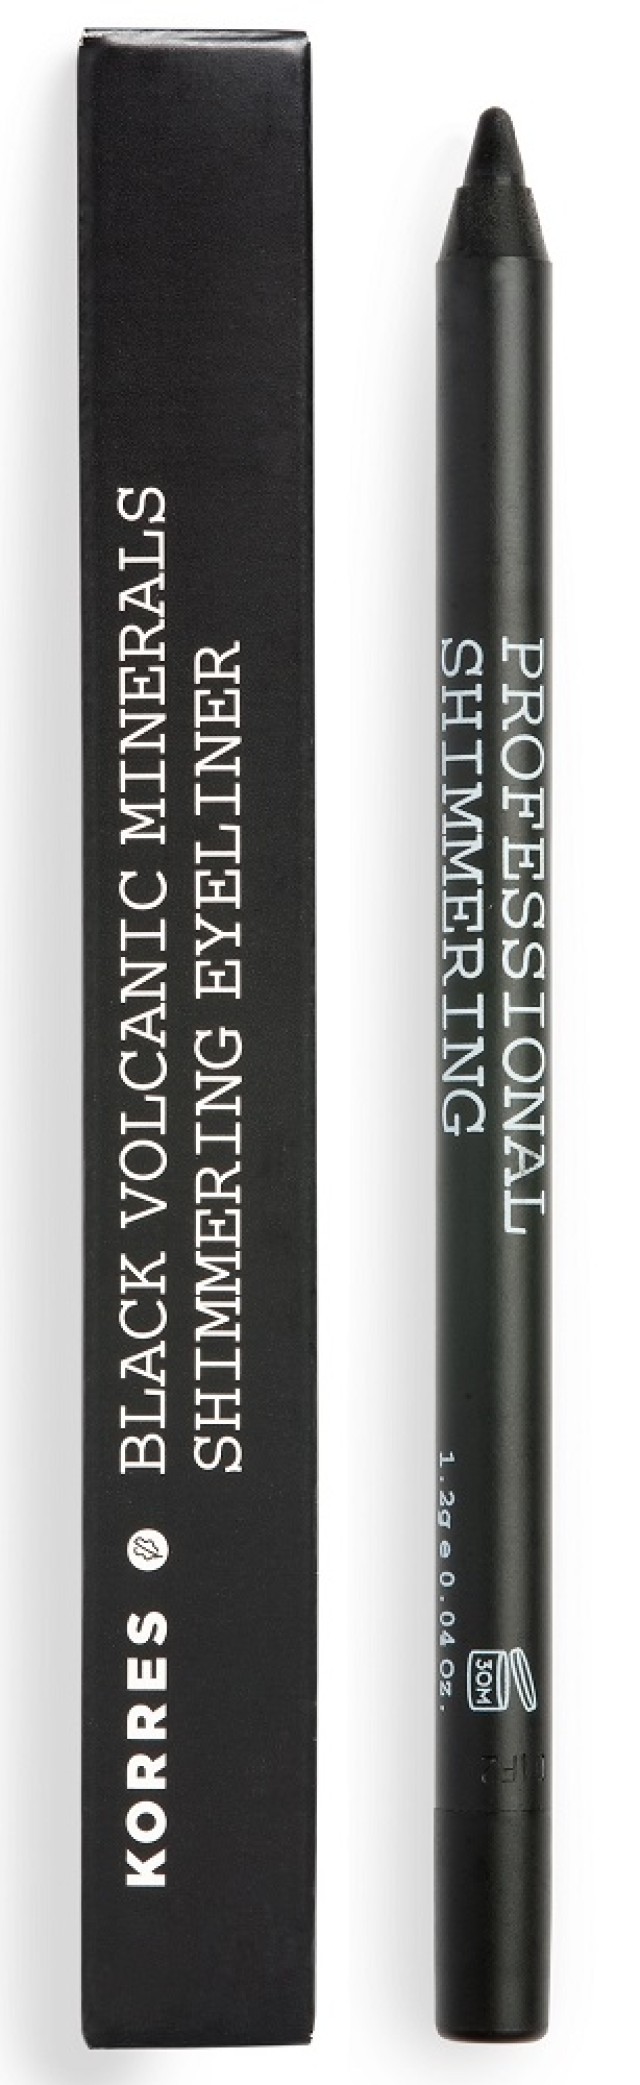 KORRES Volcanic Minerals Professional Shimmering Eyeliner 01 Black 1τμχ